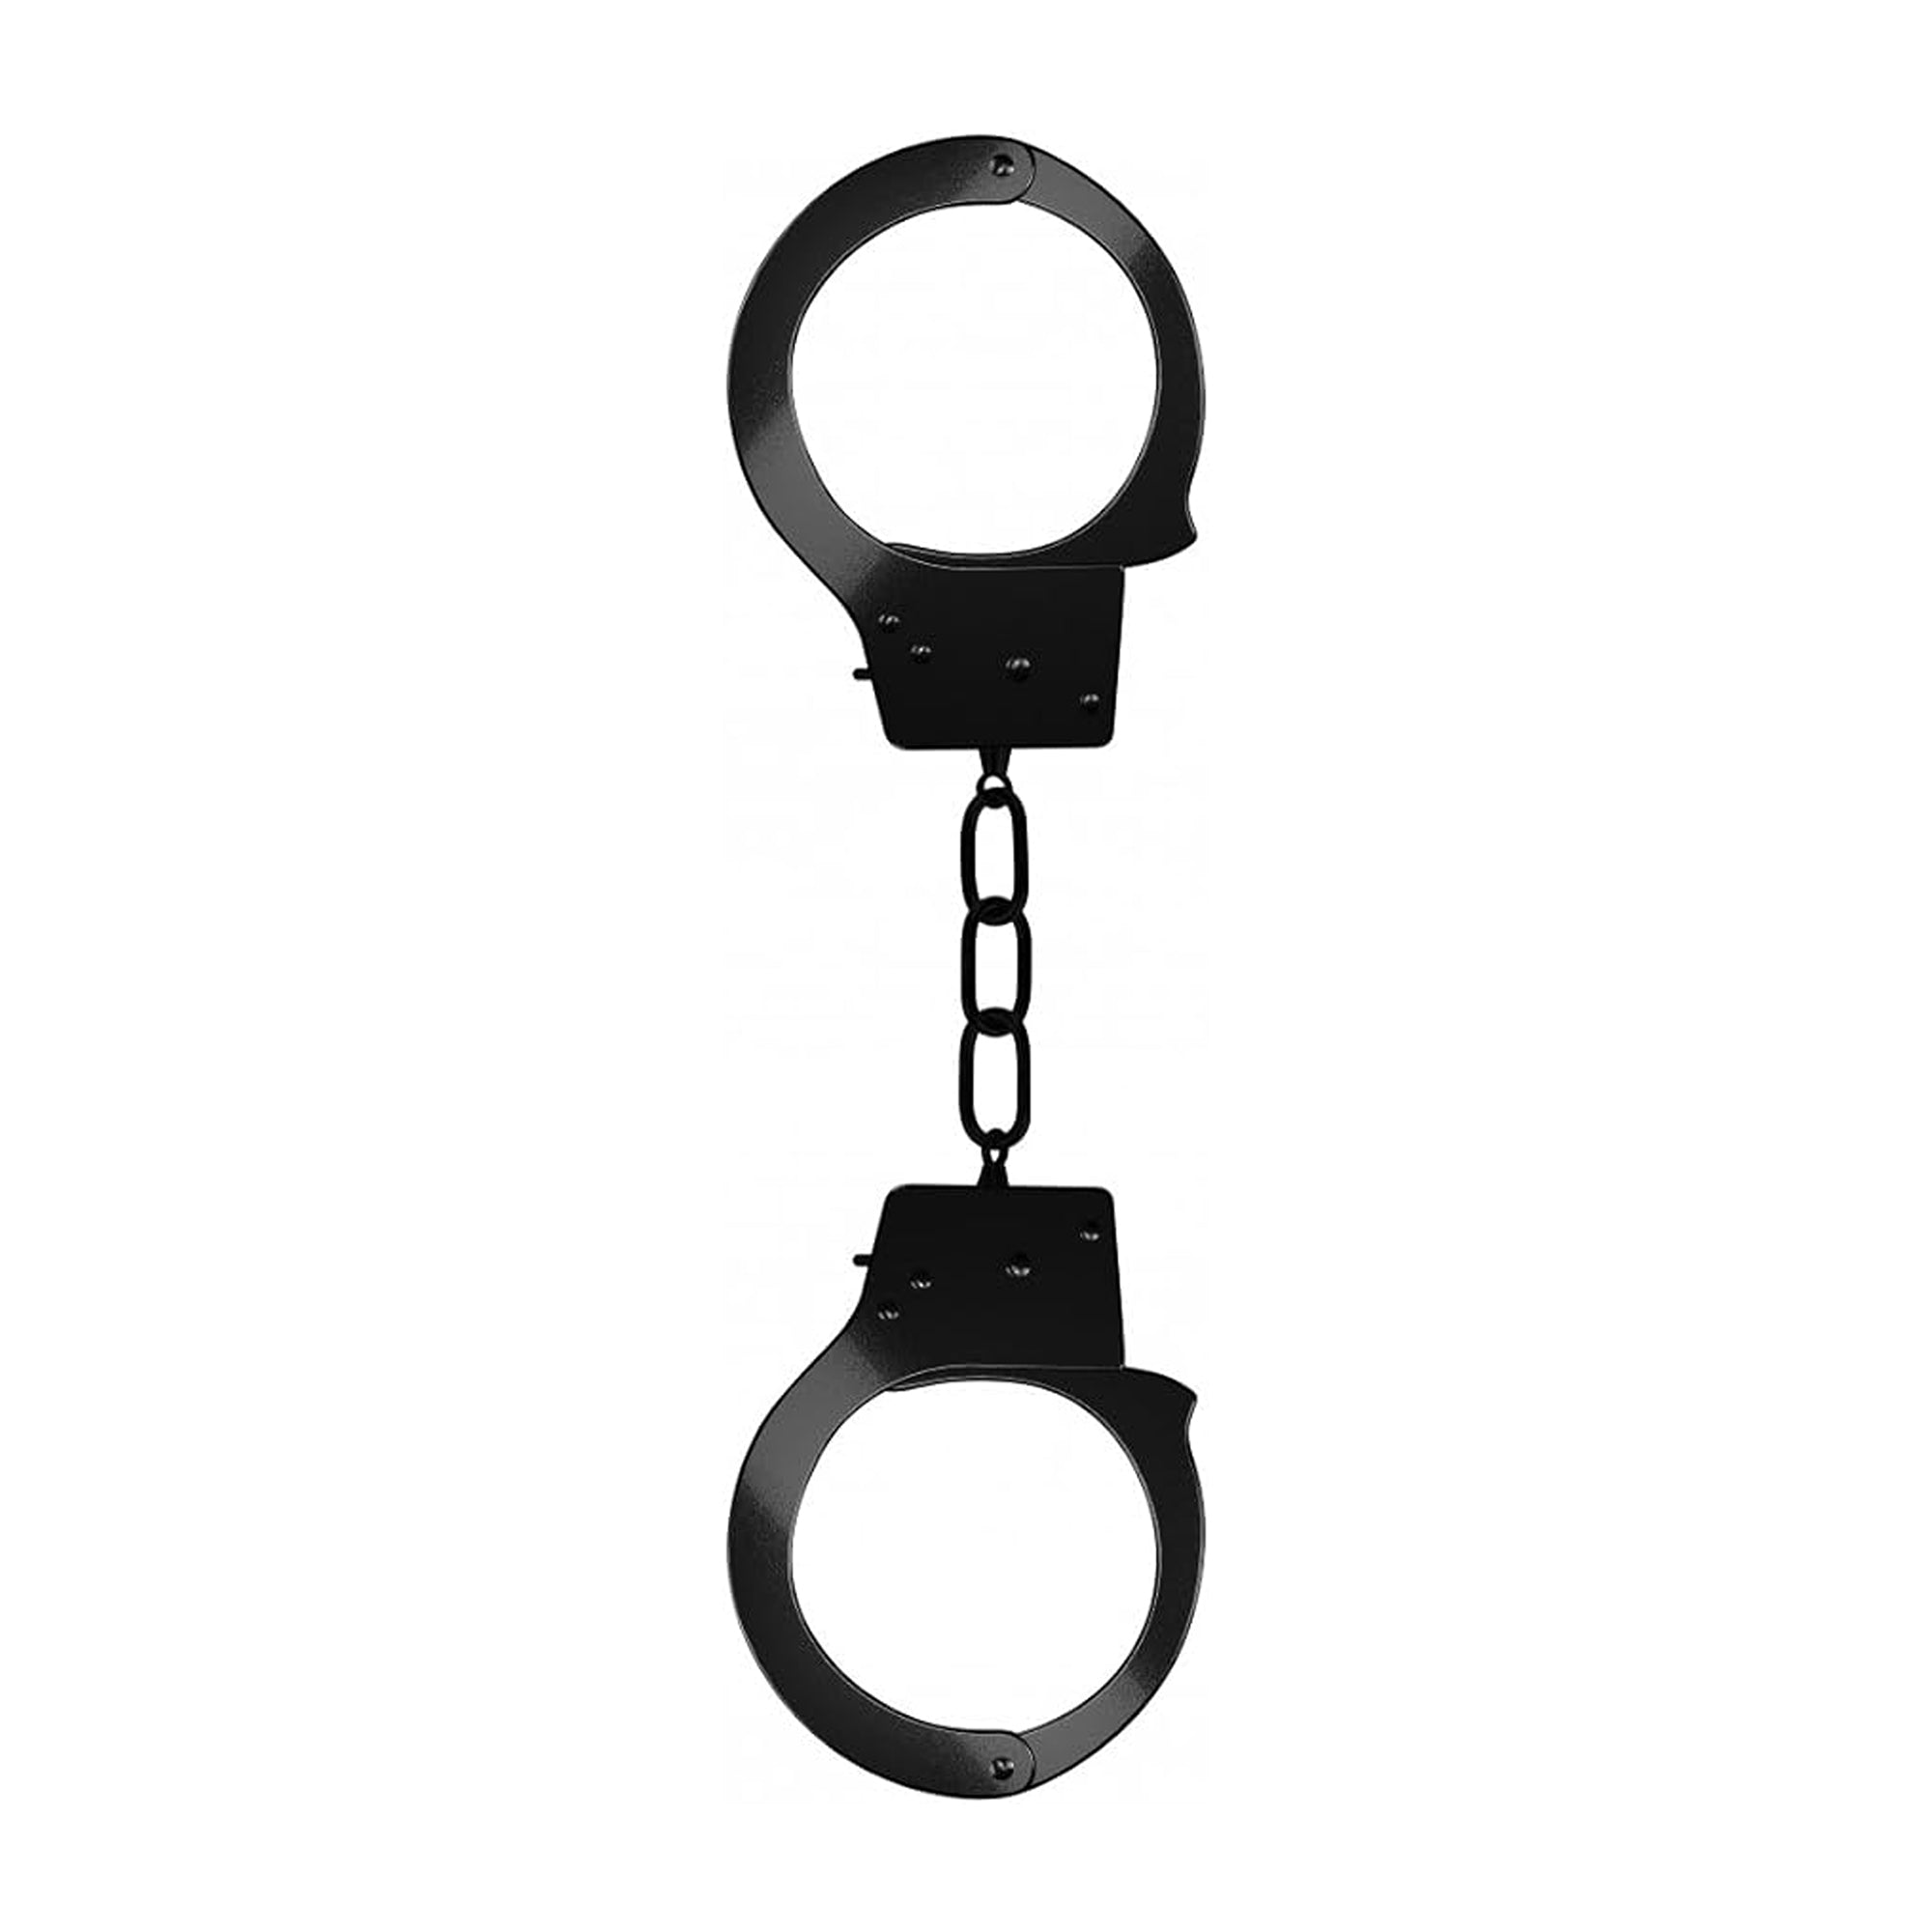 🎁 Shots Ouch Beginner Handcuffs - Black (100% off)